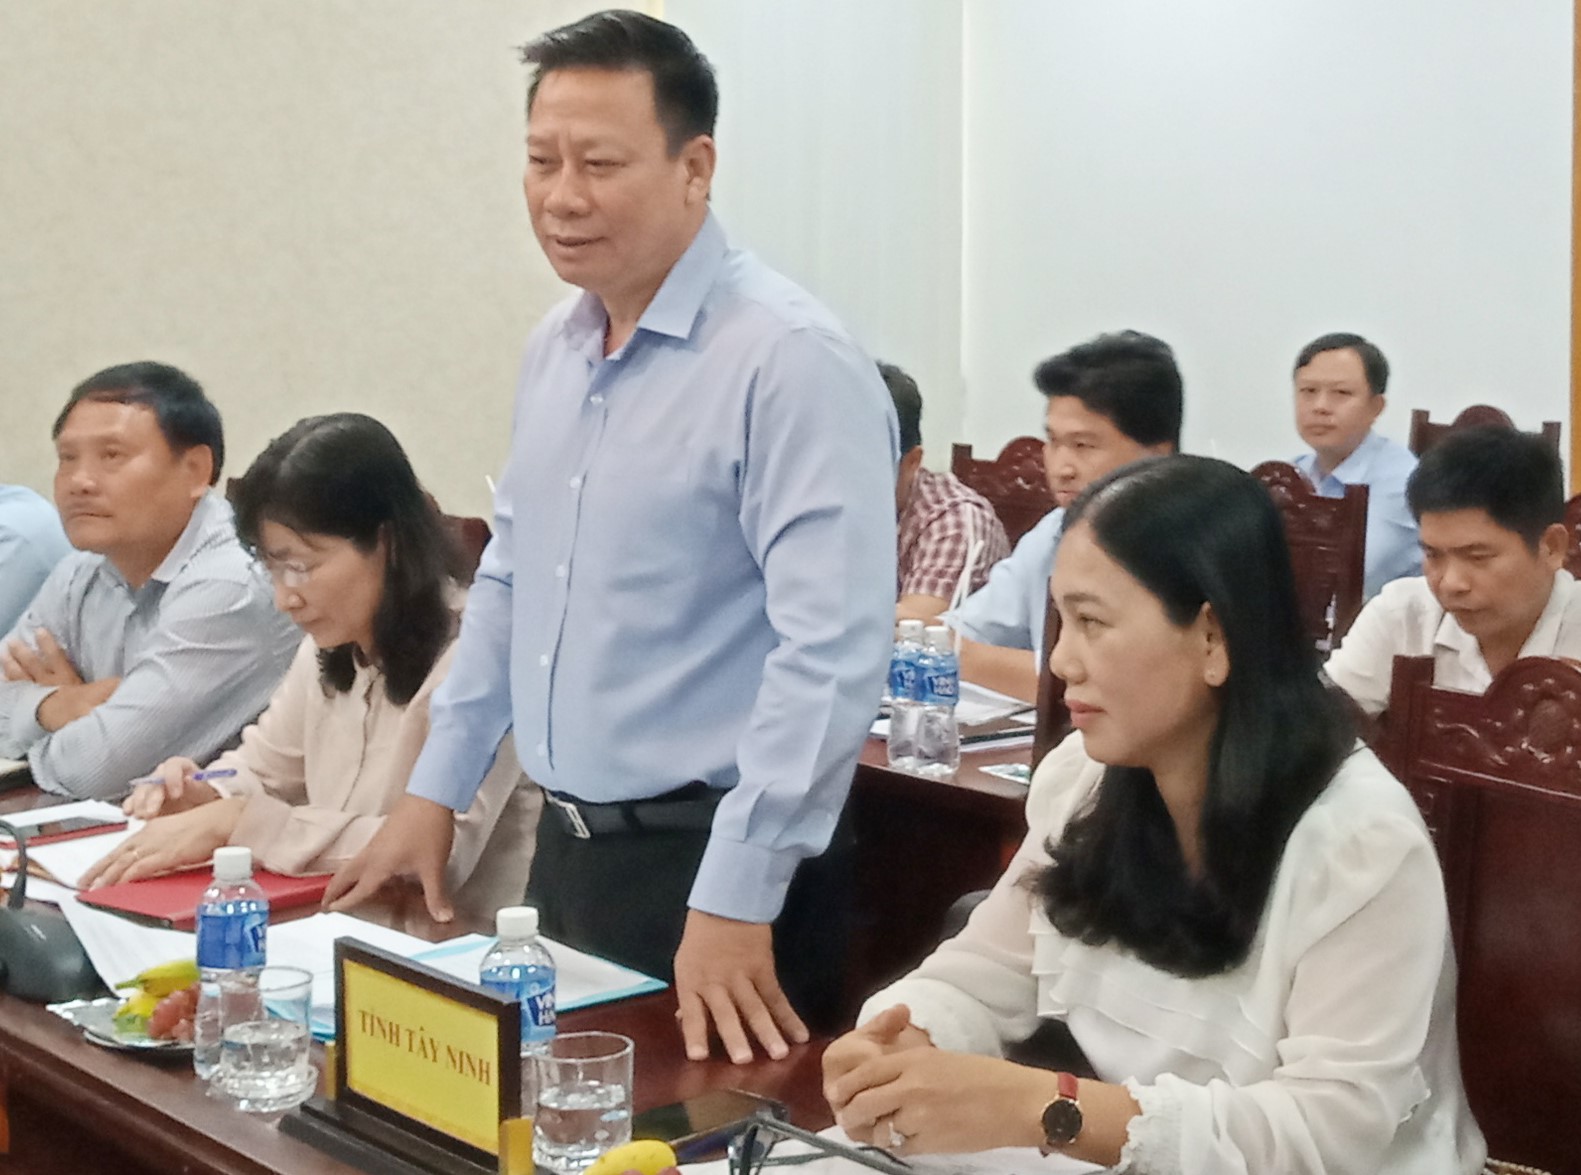 Điểm báo in Tây Ninh ngày 20.02.2019